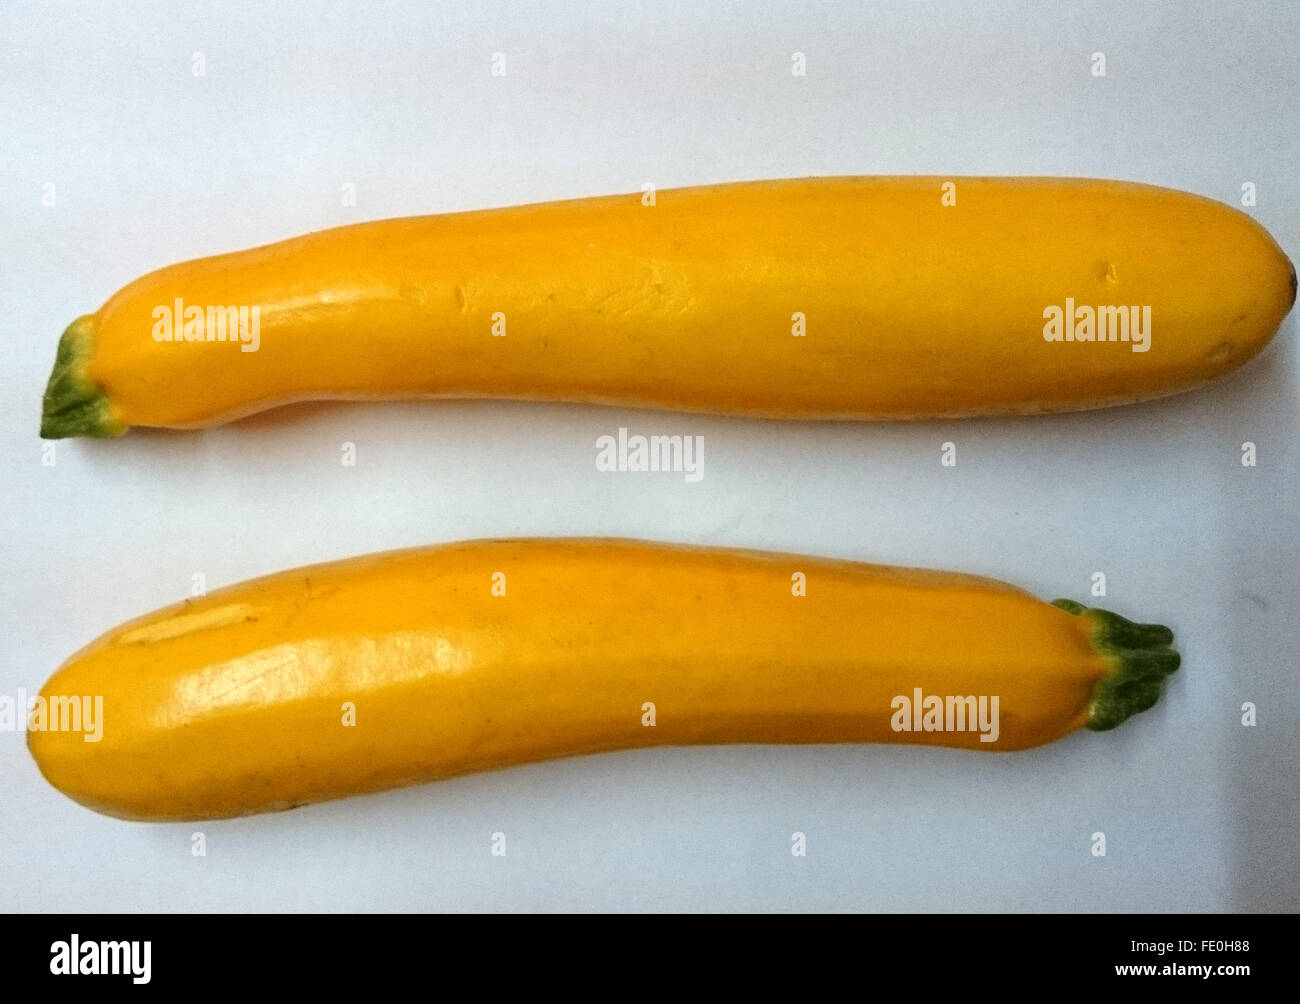 Cucurbita Pepo, gelbe Zucchini, Sommerkürbis Sorte, goldene gelbe  zylindrische Frucht, blasse weißes Fleisch, gekochtes Gemüse  Stockfotografie - Alamy